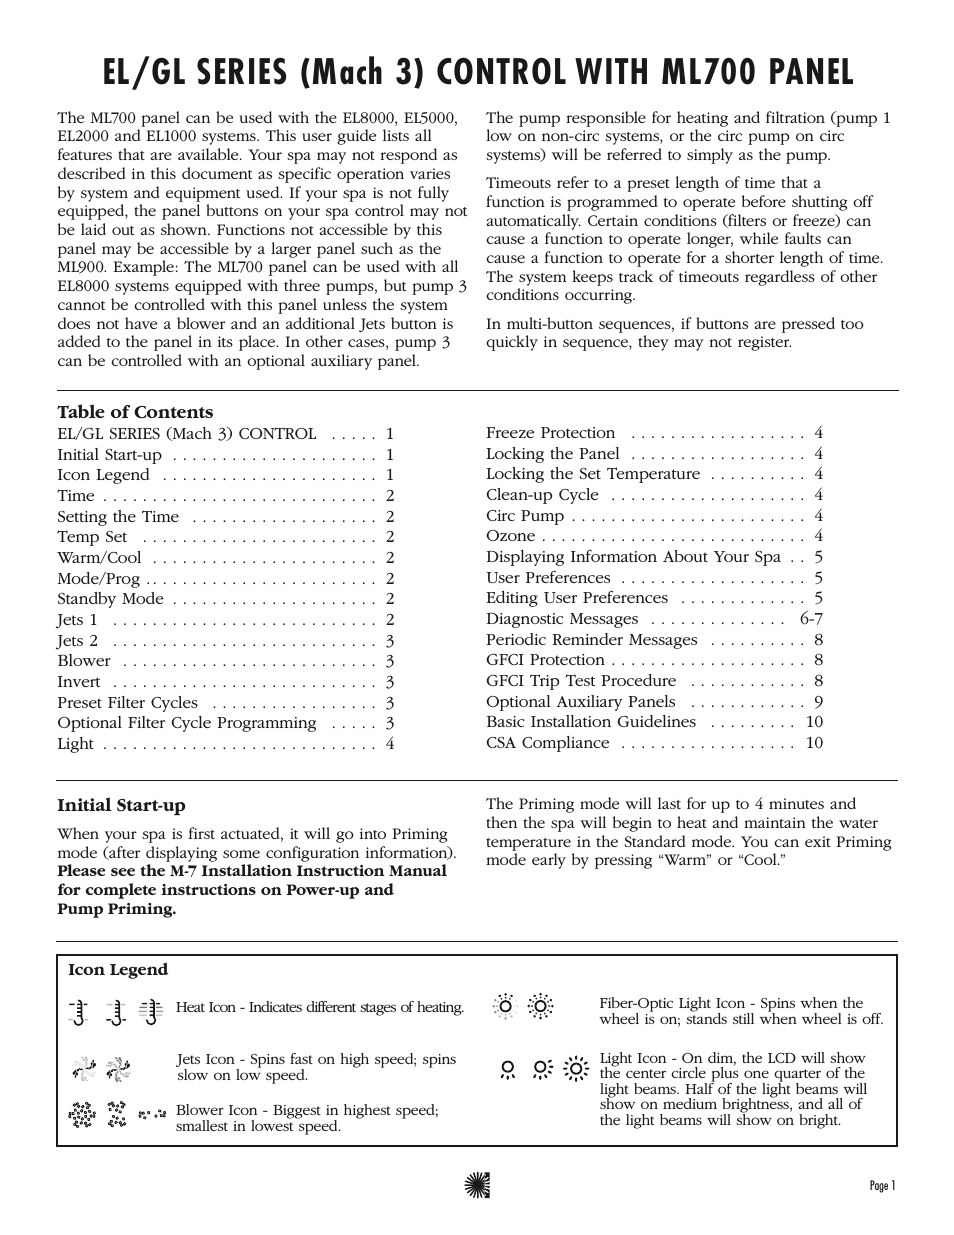 mach 3 user manual pdf